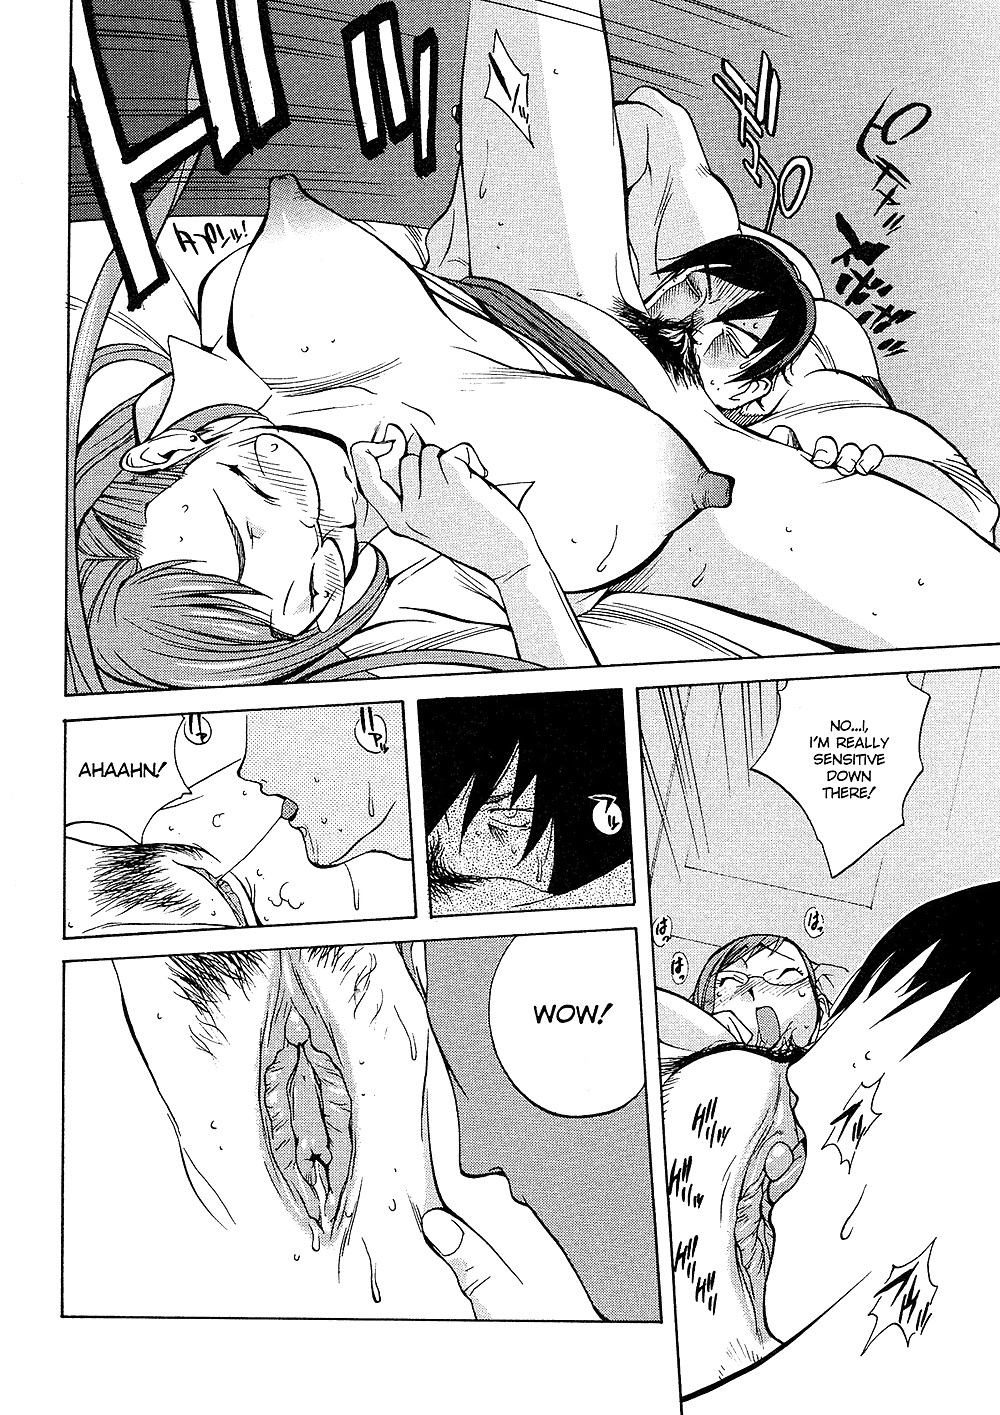 (comic hentai) yumisuke kotoyoshi erotic works #2
 #21623366